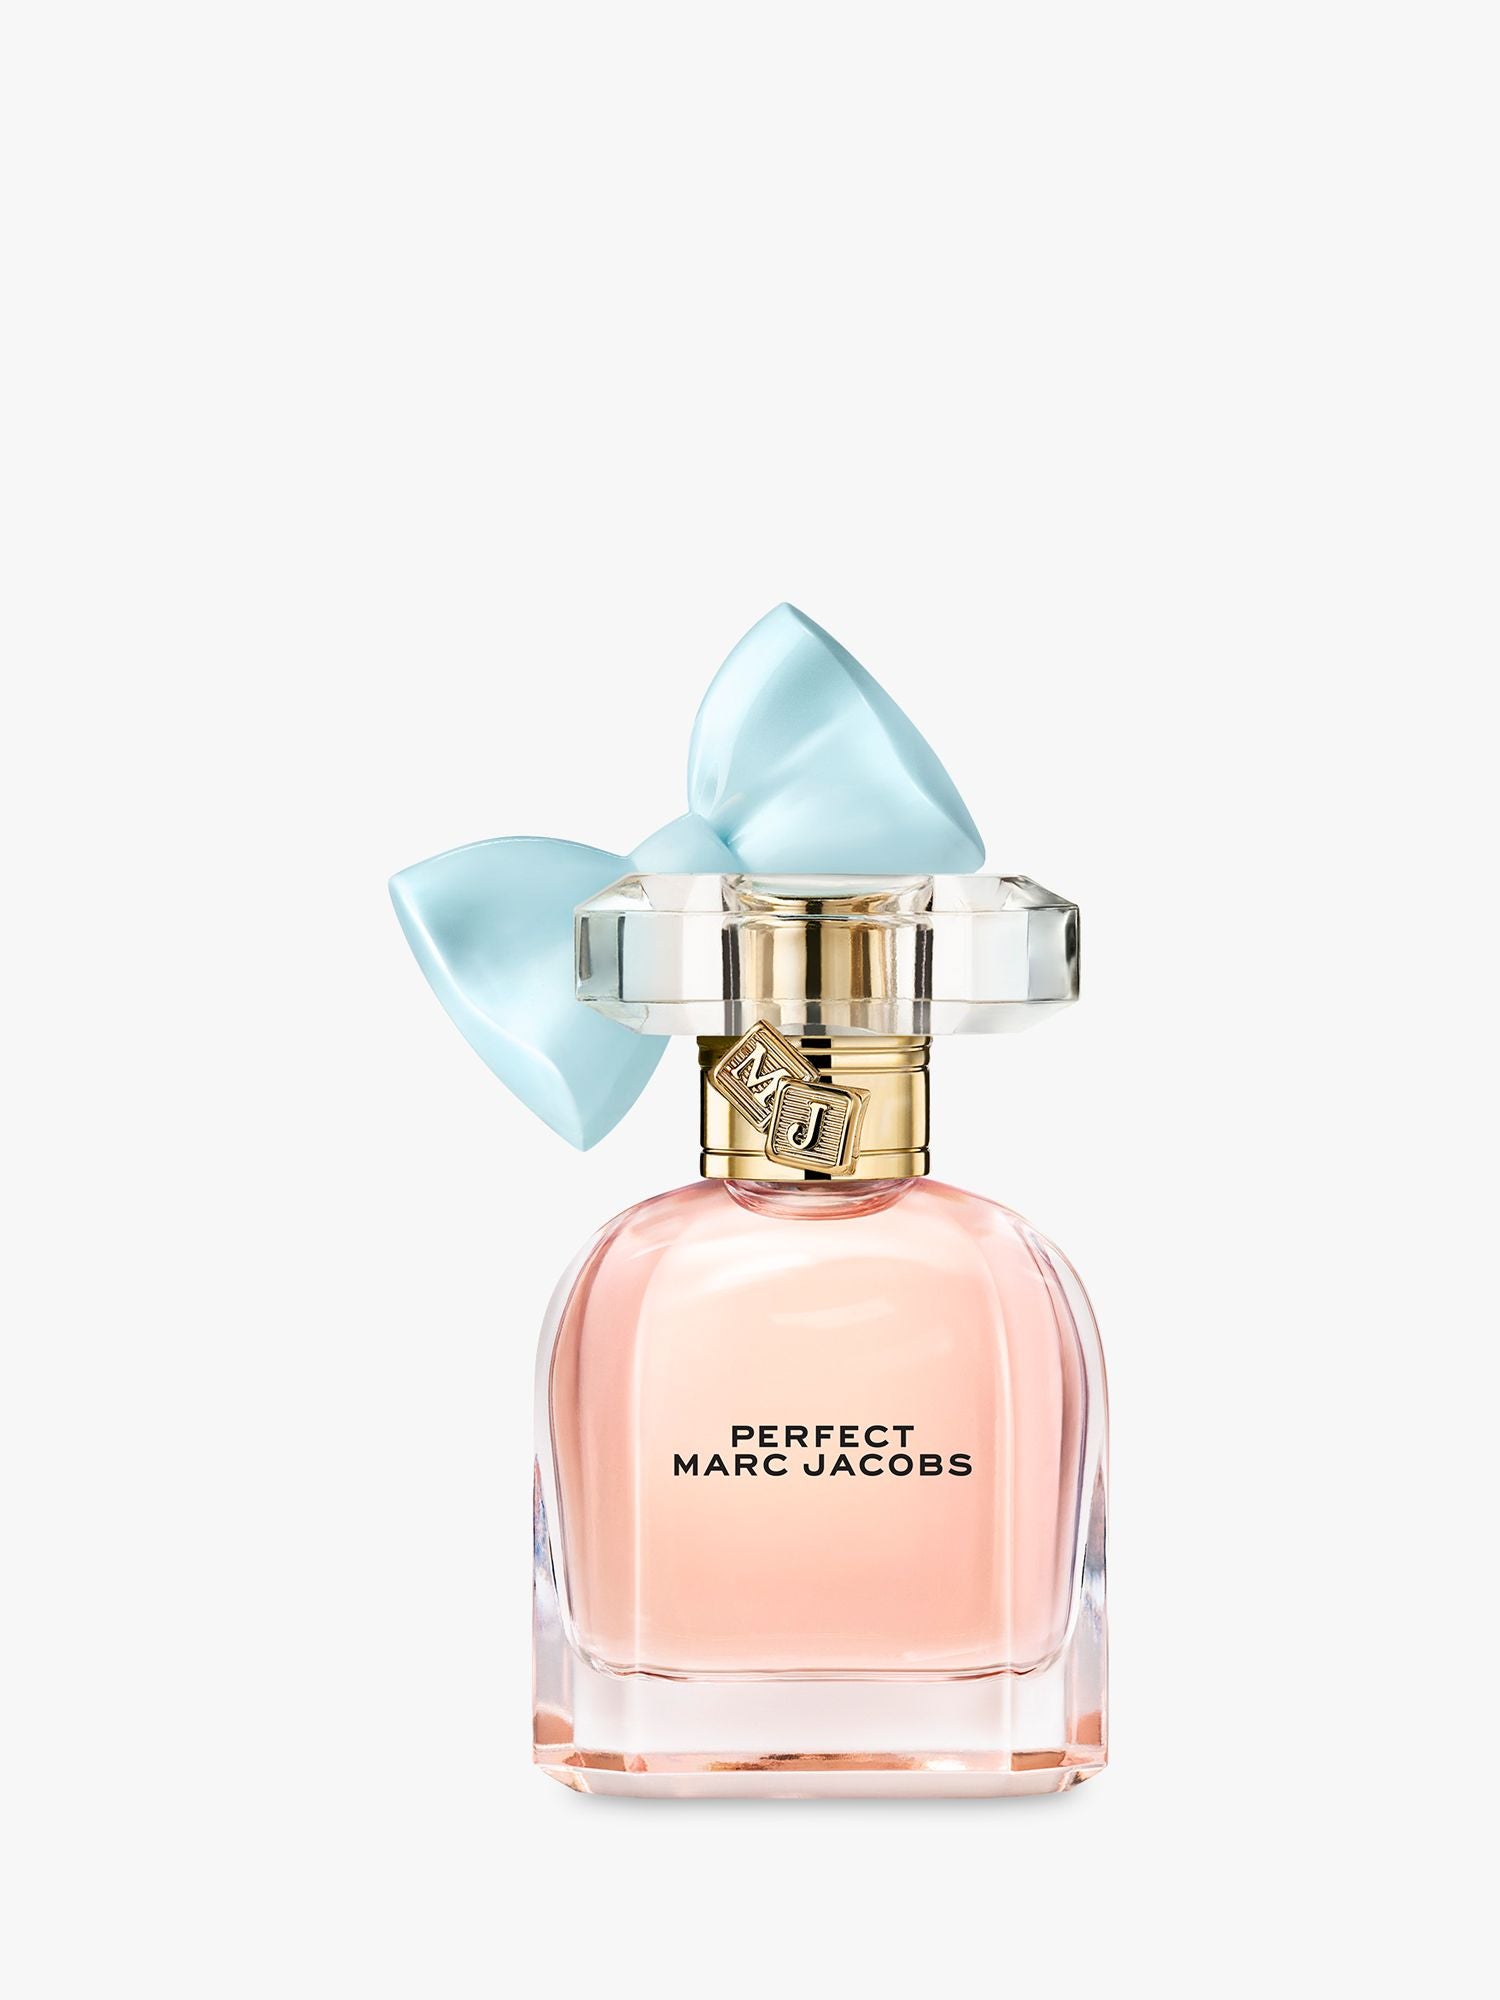 Perfect Eau de Parfum Trial Size - 5 ml